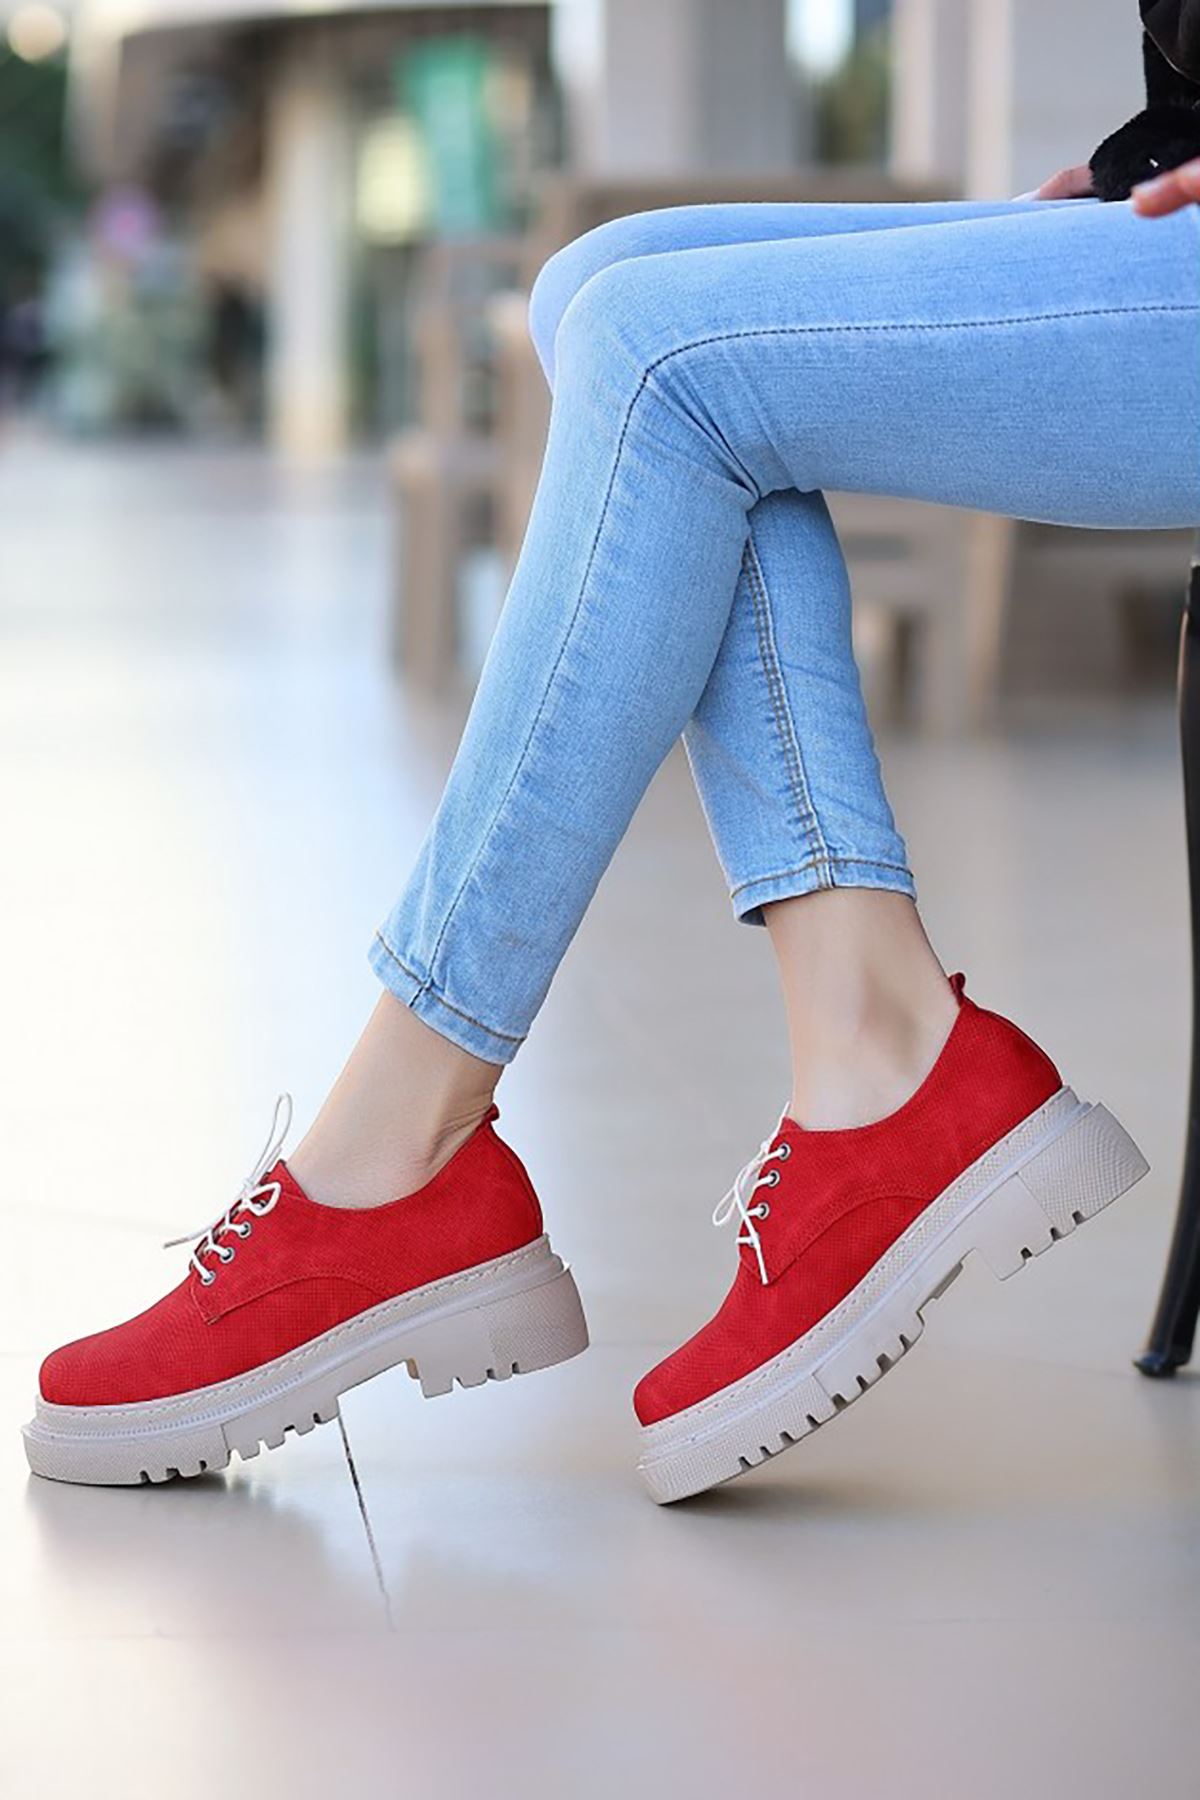 ERBTERİ Teri Kırmızı Deri Spor Bayan Sneakers